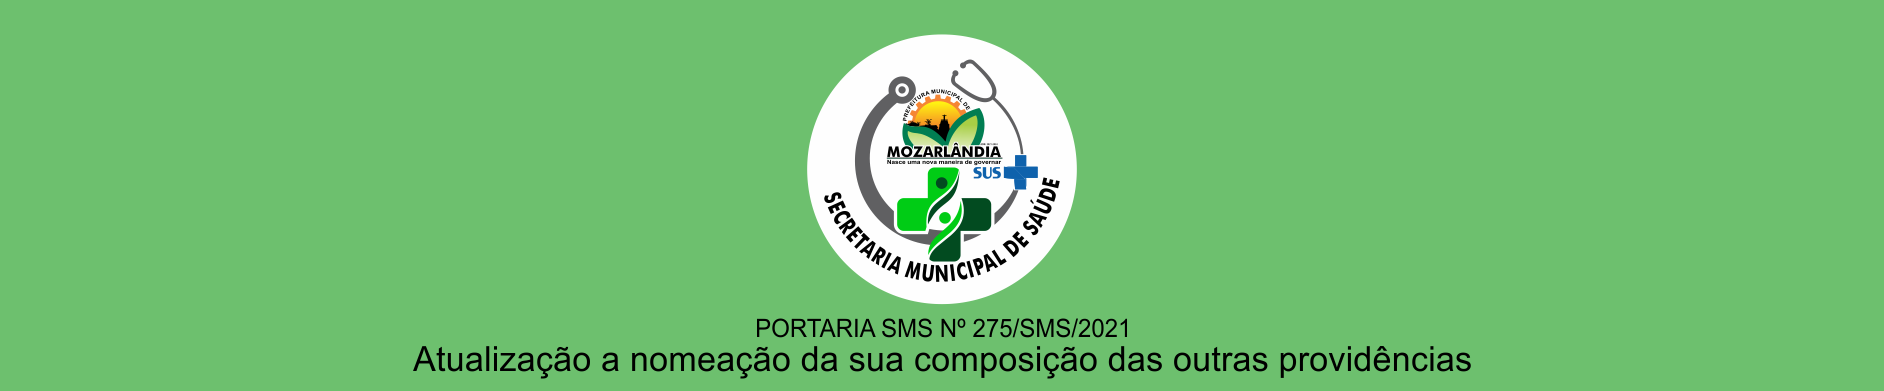 Atualização a nomeação da sua composição das outras providências – Portaria SMS nº 275/SMS/2021